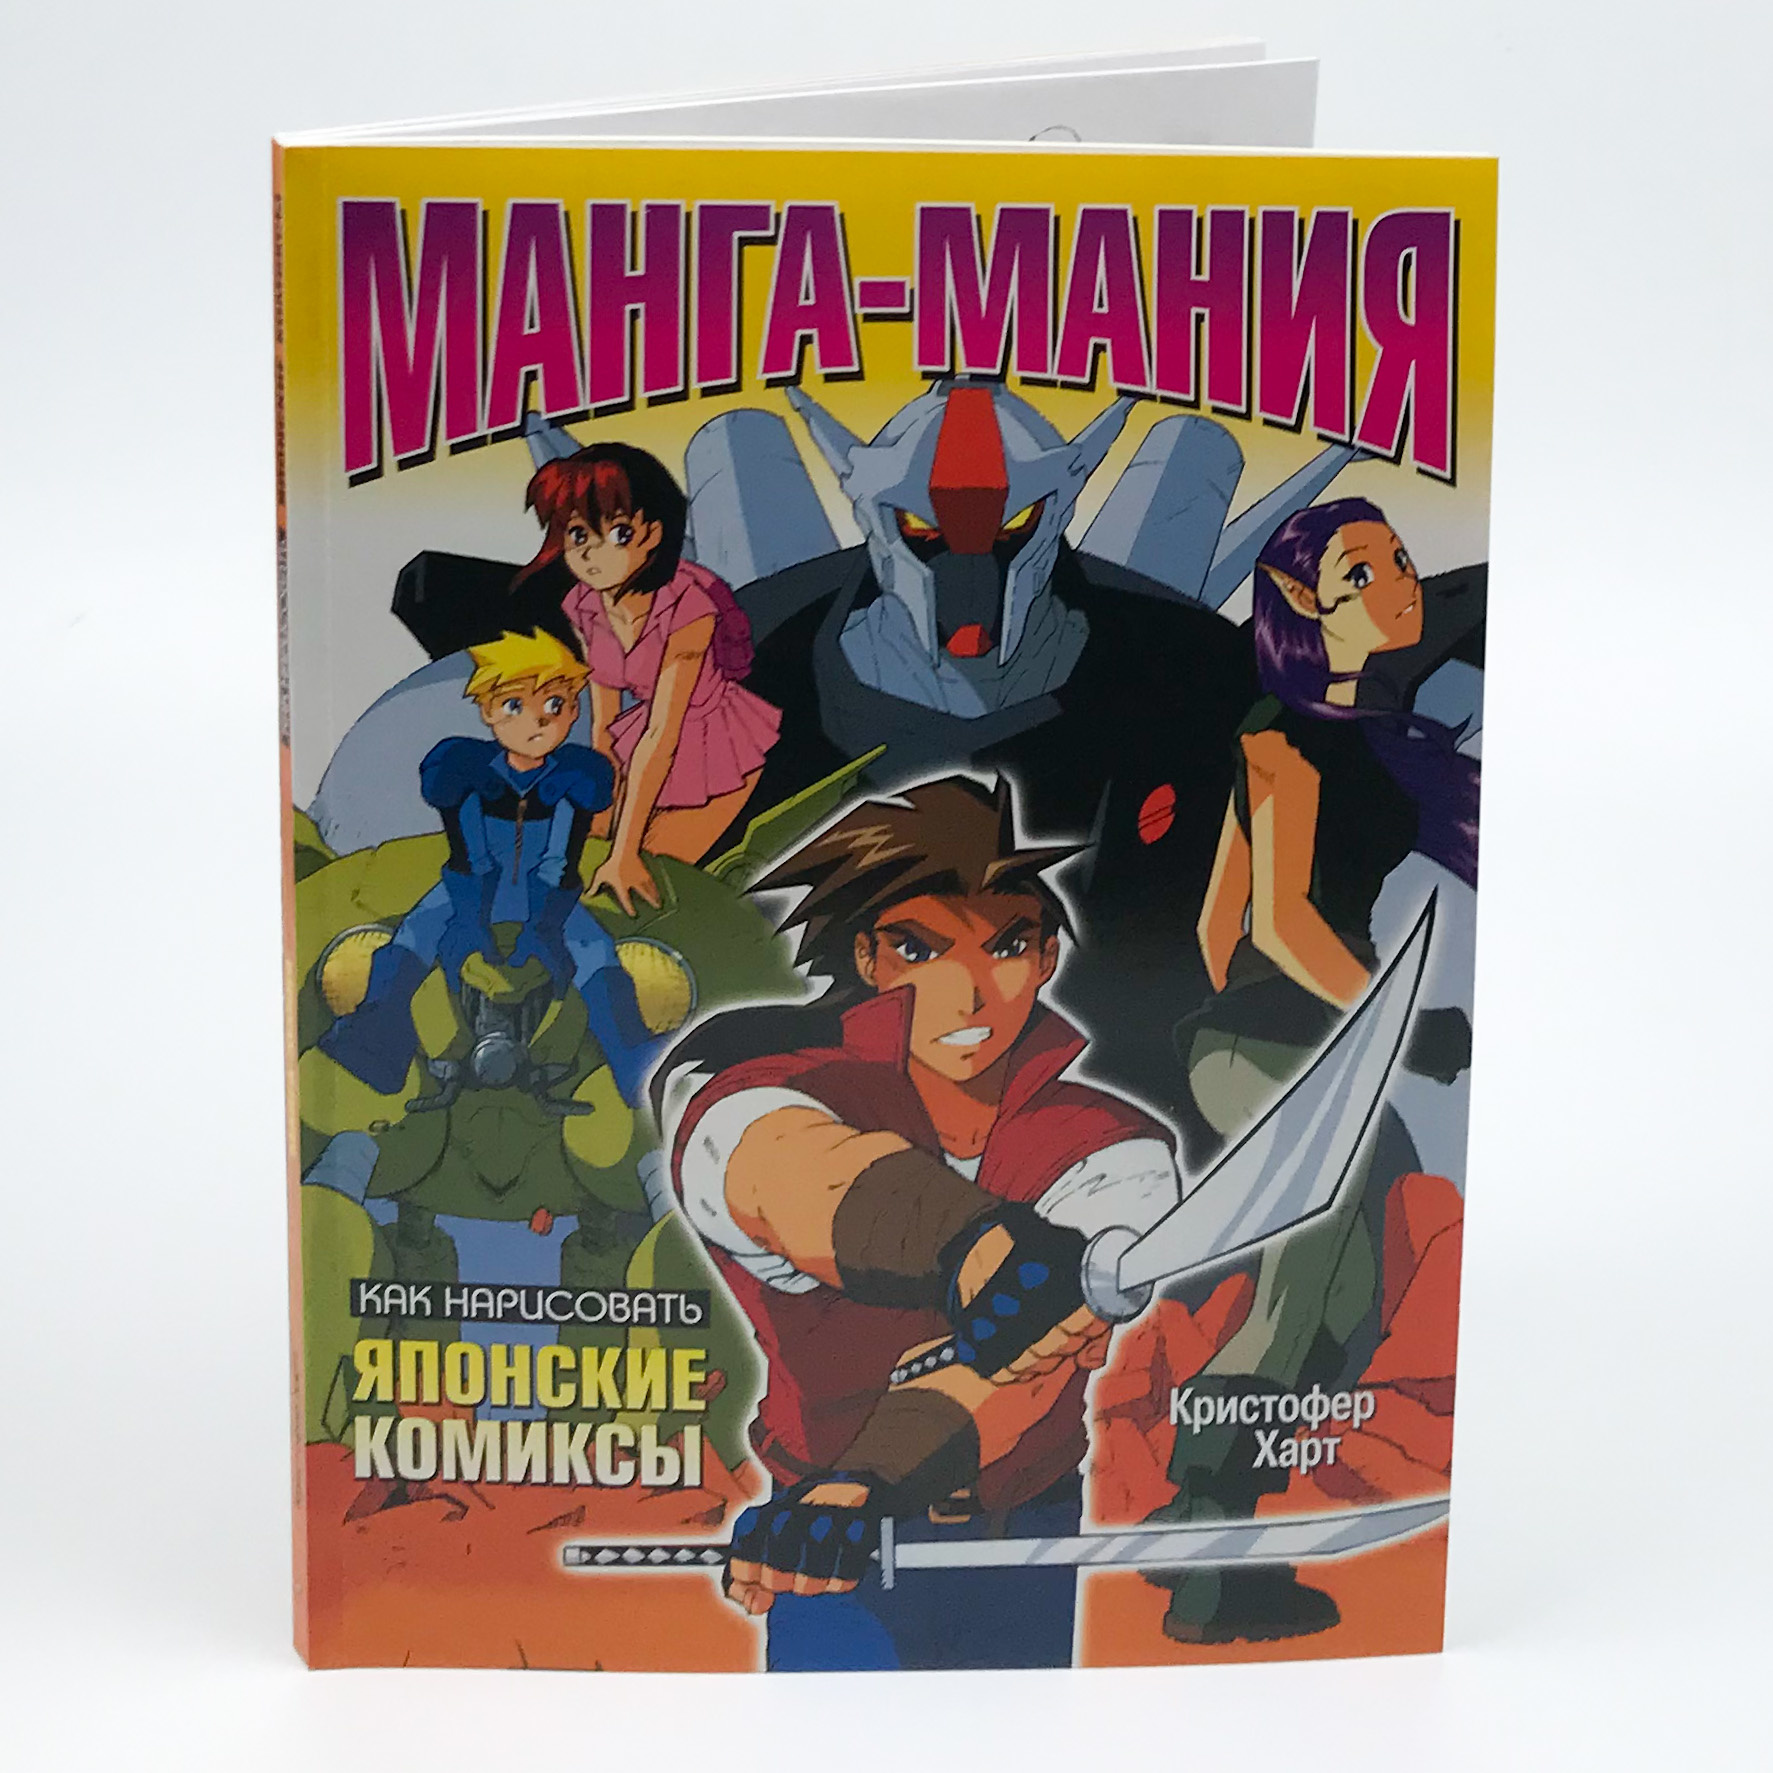 Манга-мания: как нарисовать японские комиксы. Автор — Харт Кристофер. 